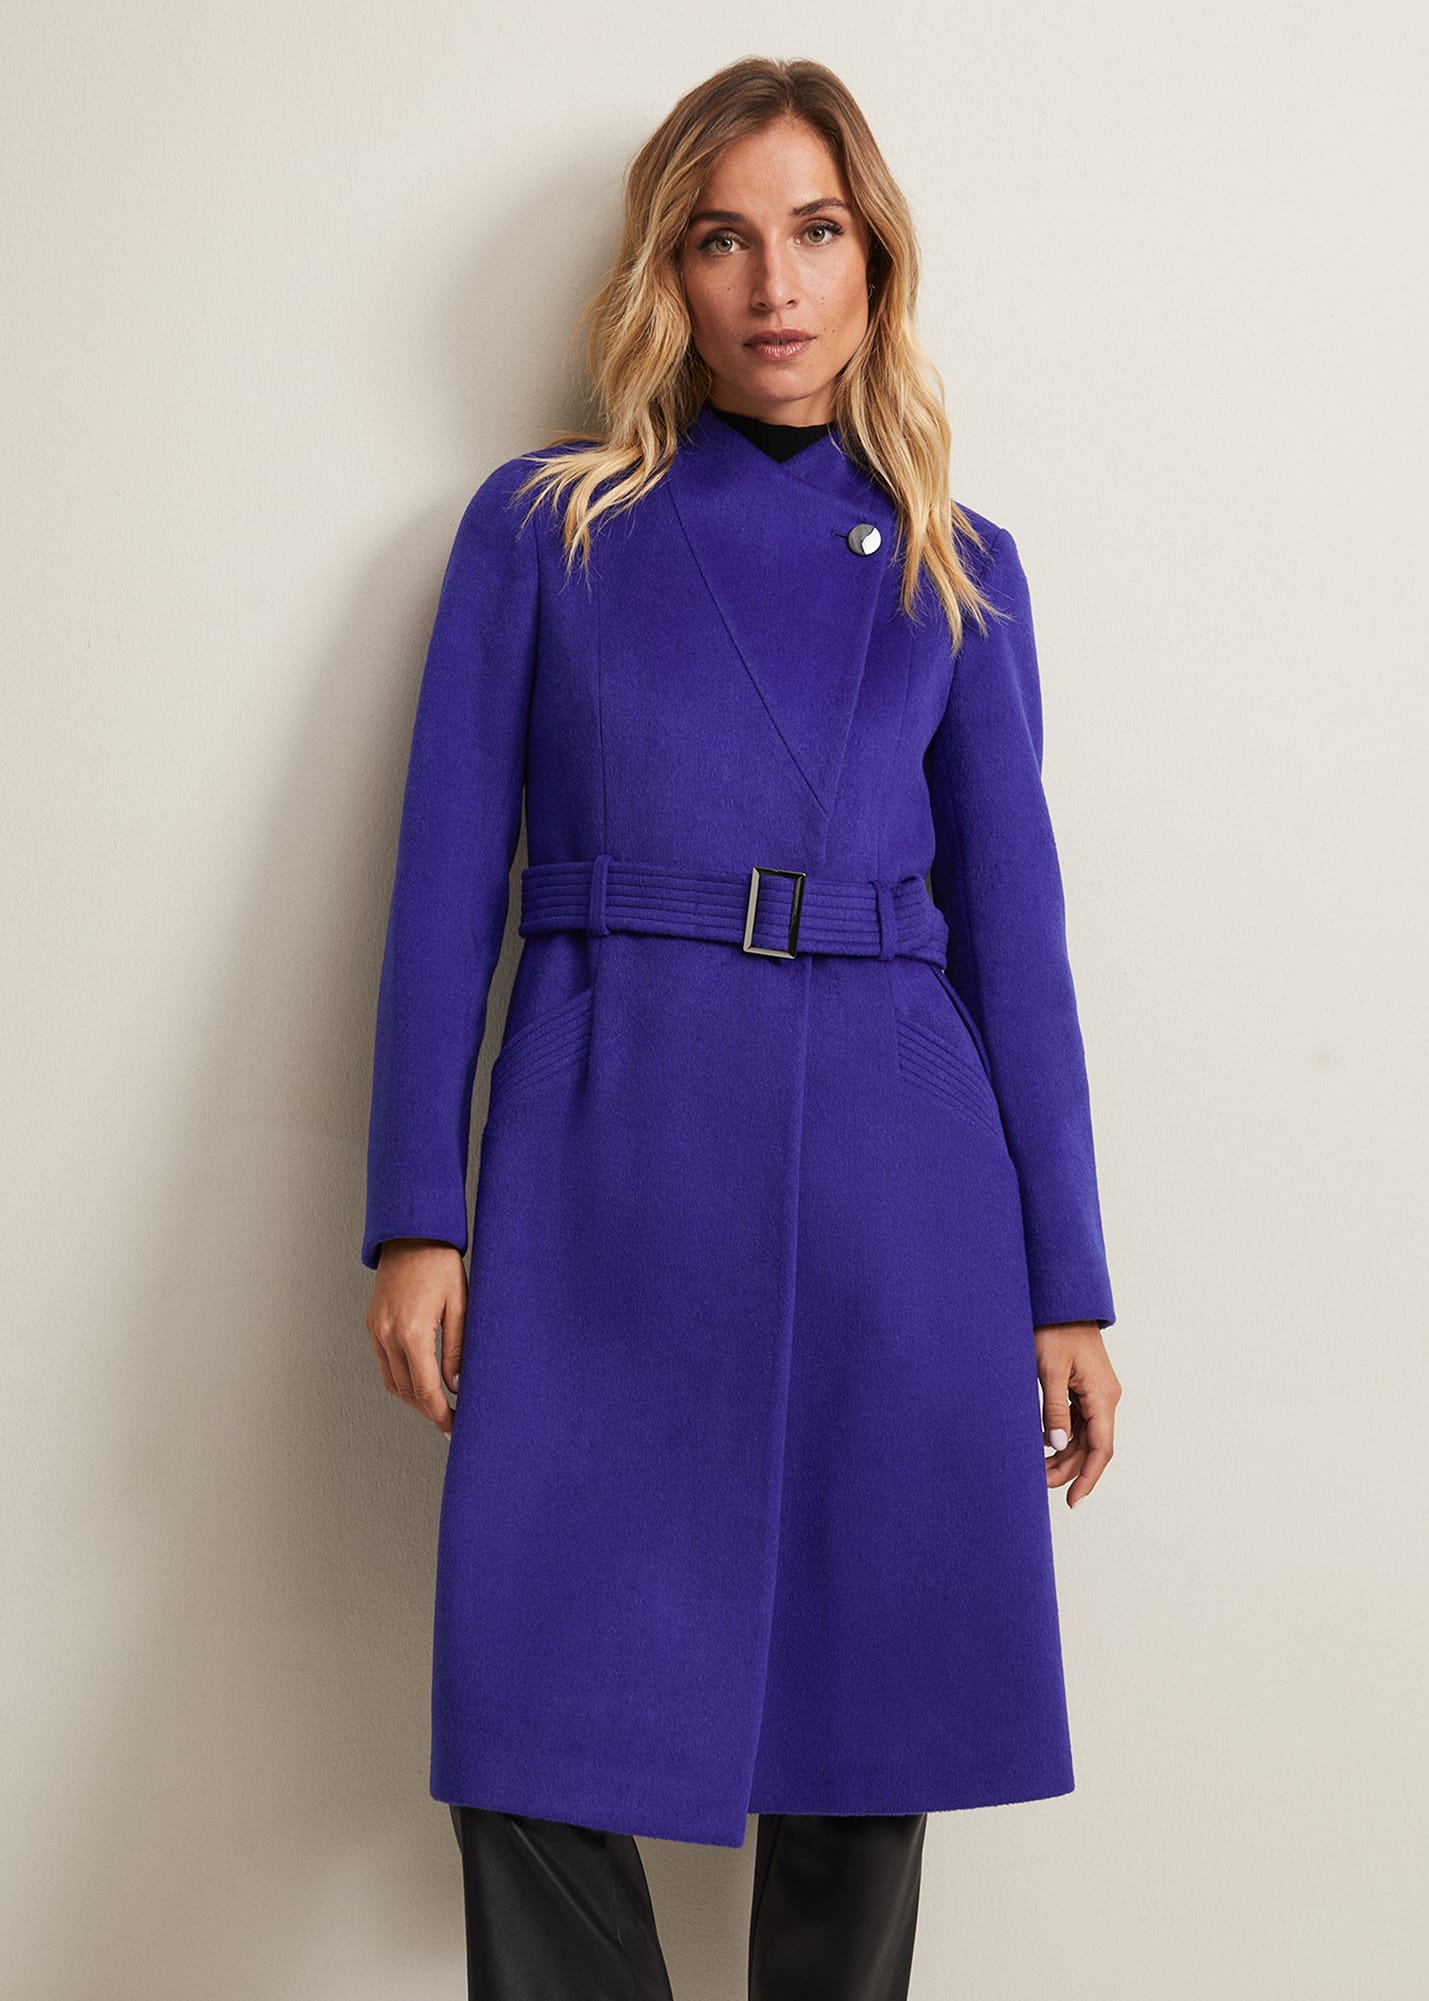 Phase Eight Women's Susanna Purple Wool Coat